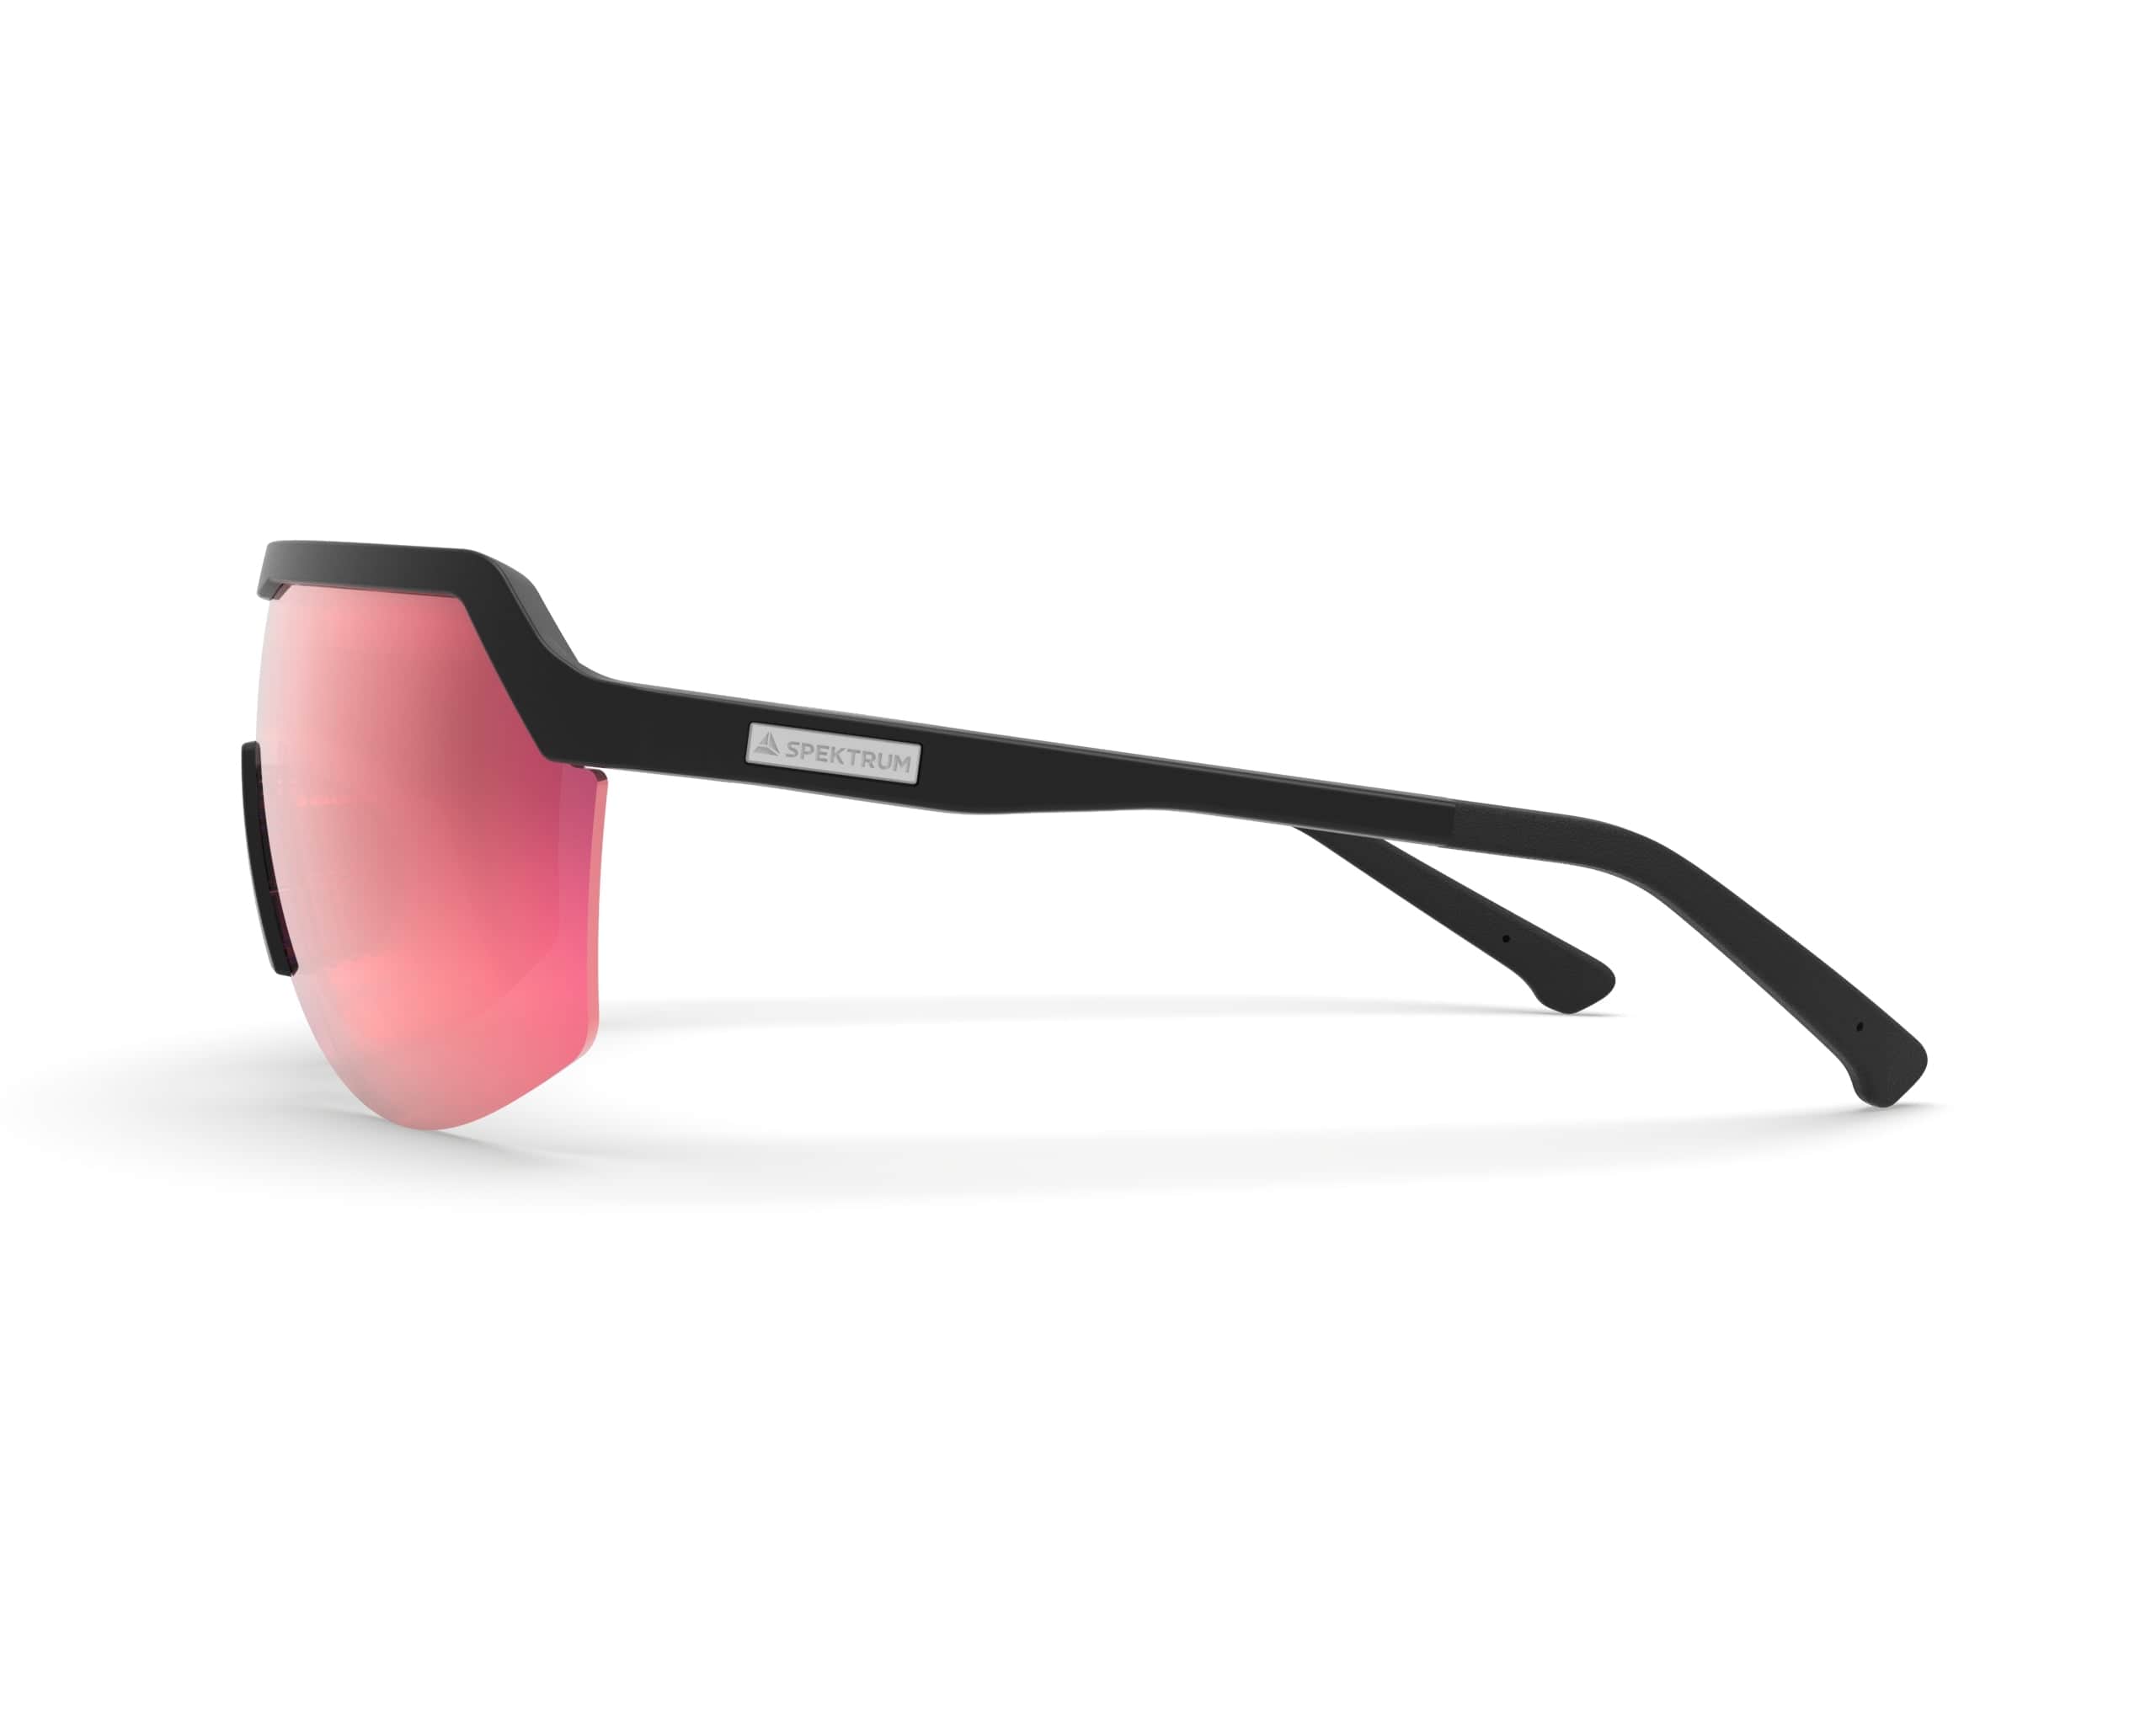 Spektrum Sunglasses Black Frame / Zeiss Infrared Lens BLANK: Black Frame / Zeiss Infrared Lens XMiles